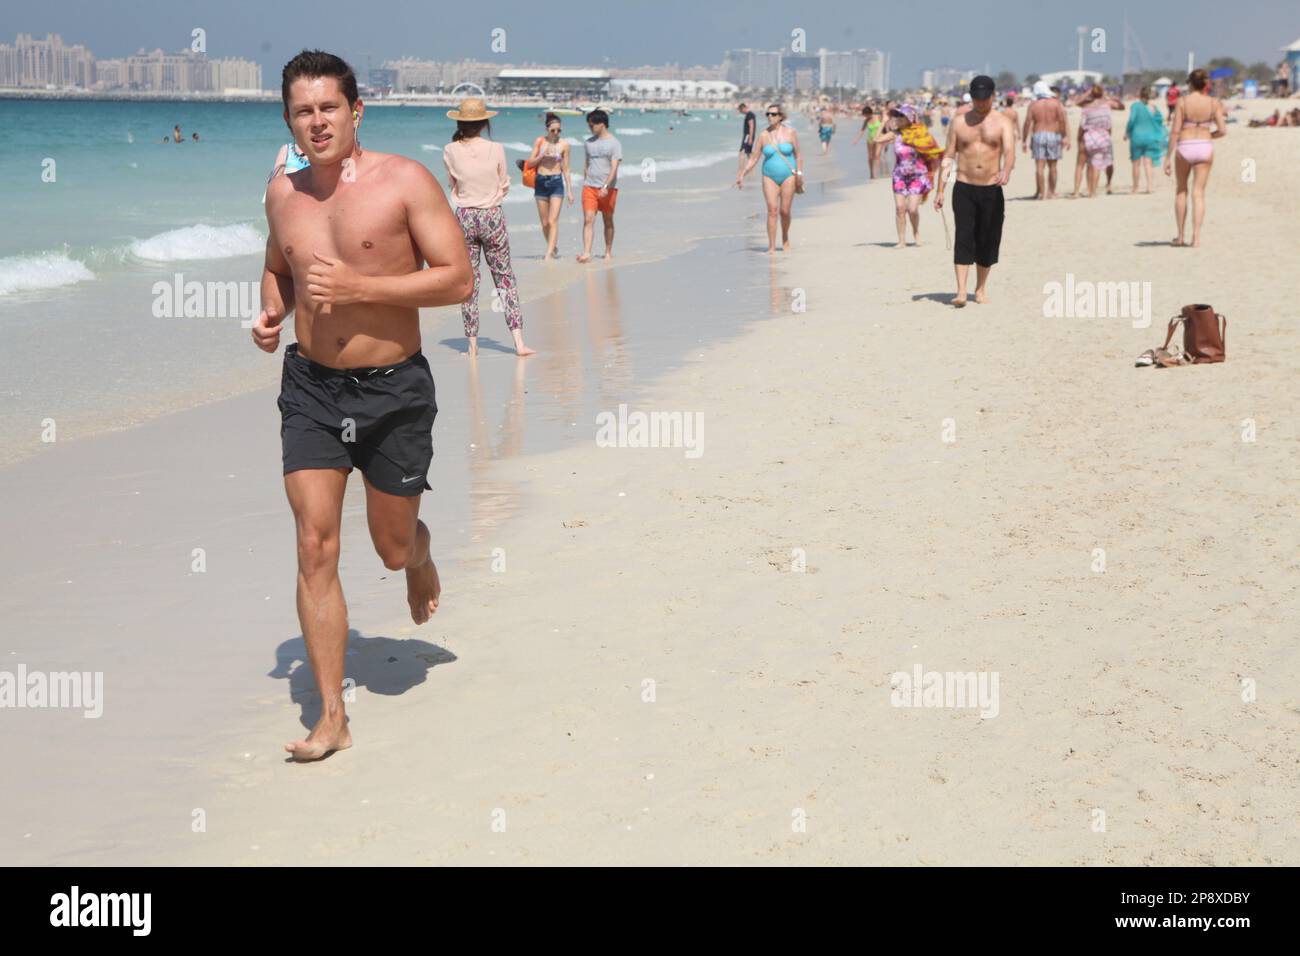 Le jeune Briton en short bénéficie de la course pieds nus et d'un bain de soleil sur la plage de sable à Dubaï en février, ainsi que d'autres gens du Caucase bénéficient de l'hiver 27C Banque D'Images